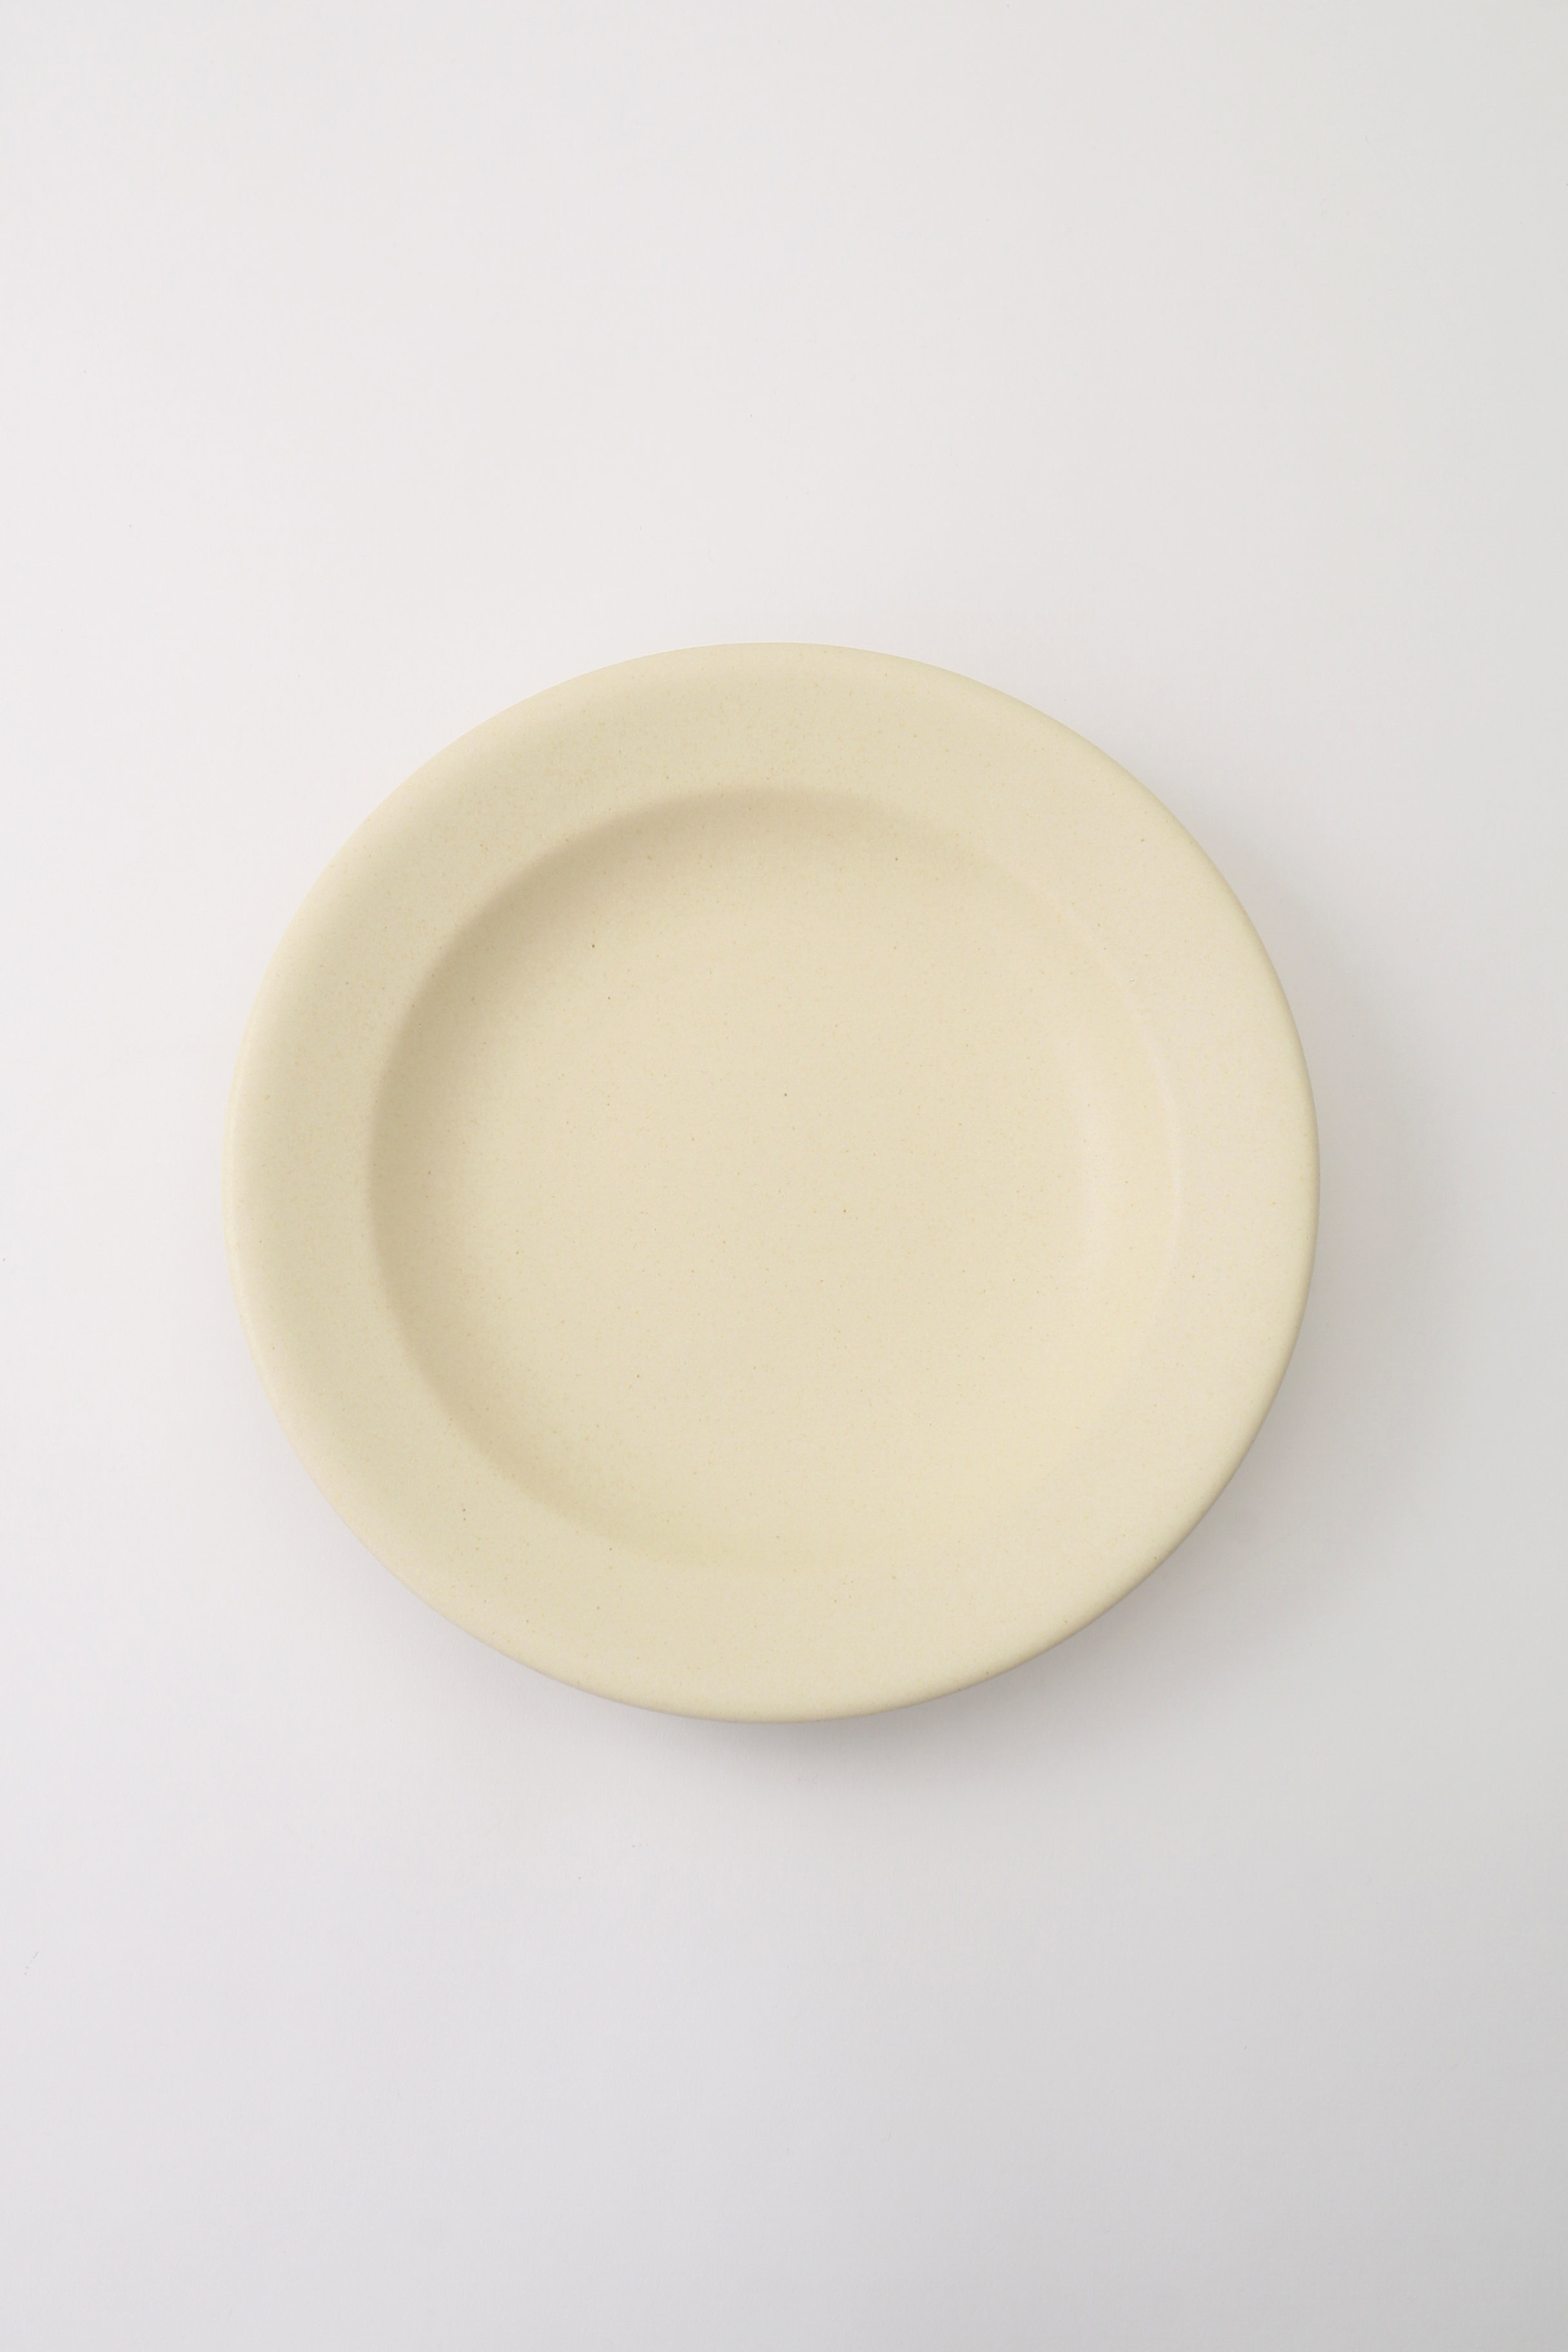 あわびウェア/Awabi wareのパスタ皿(アイボリー/L01-032)